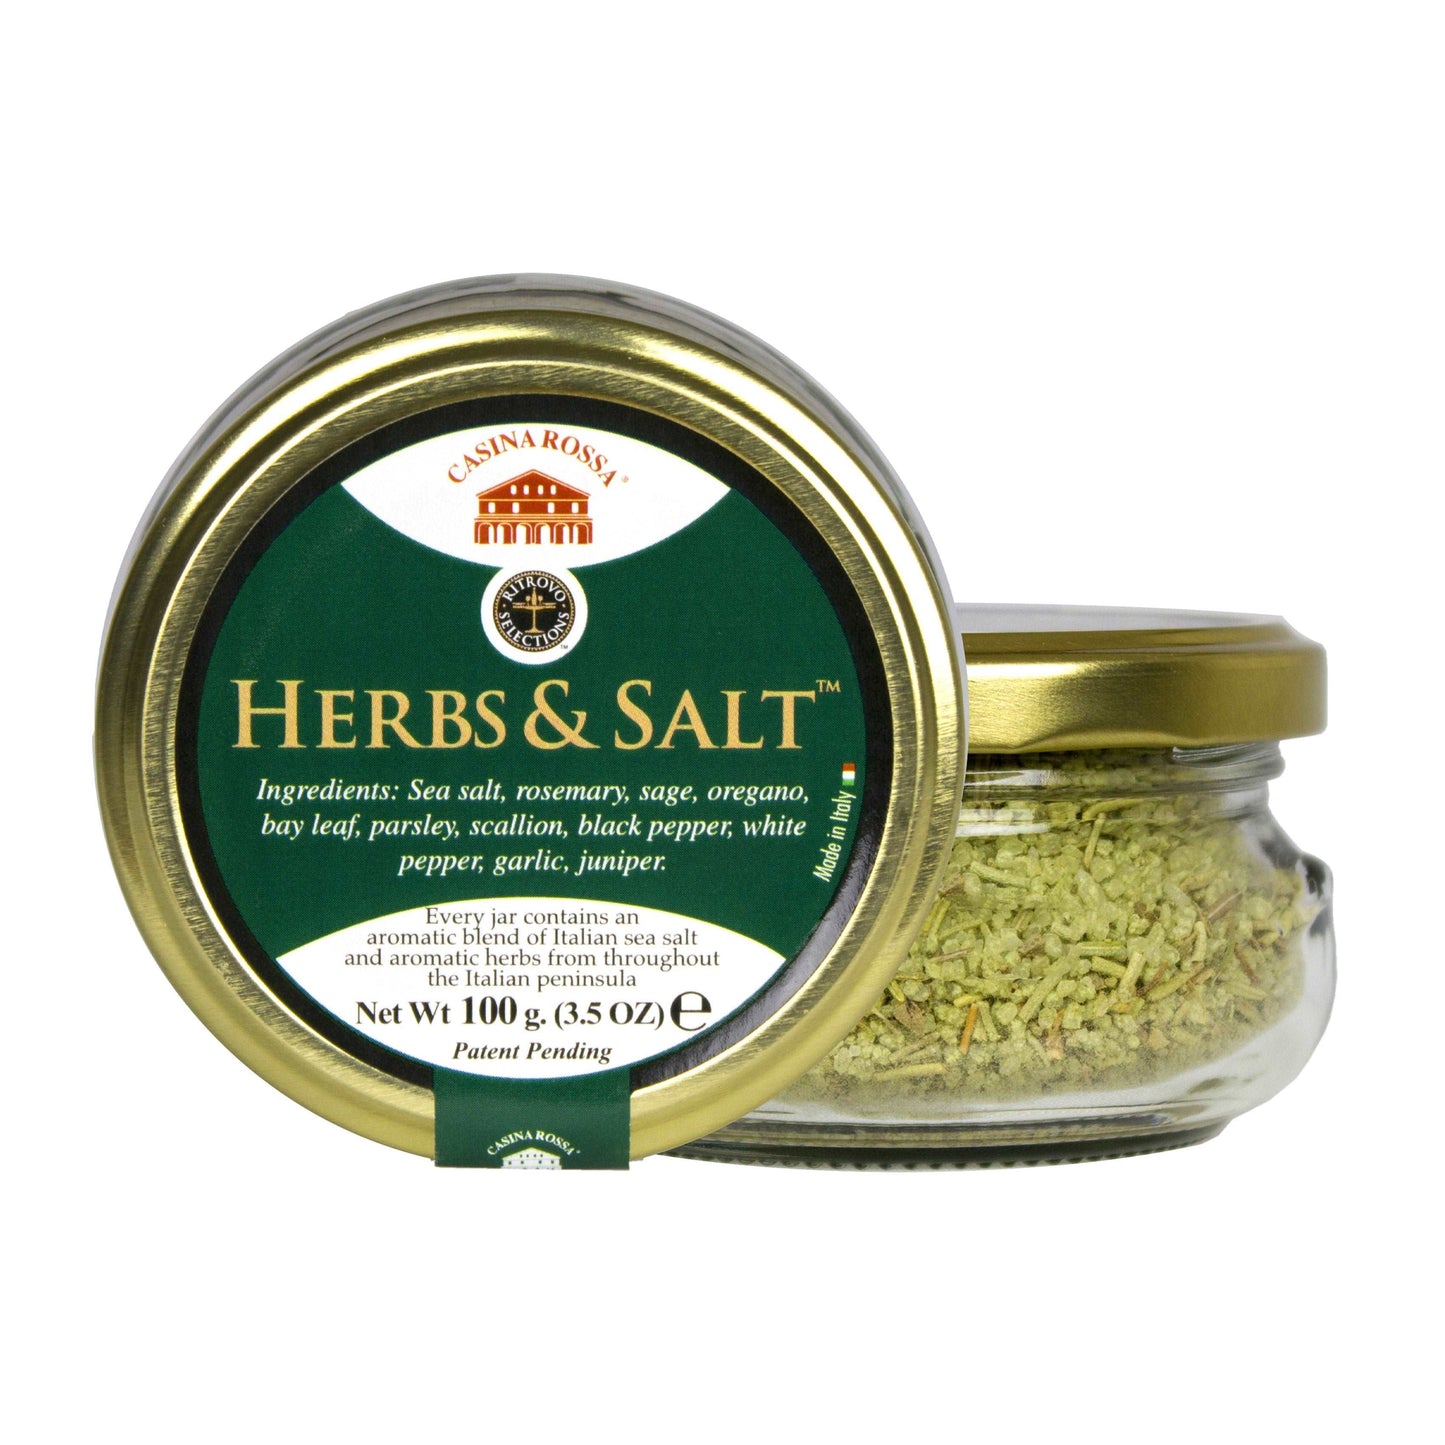 Casina Rossa Herbs & Salt